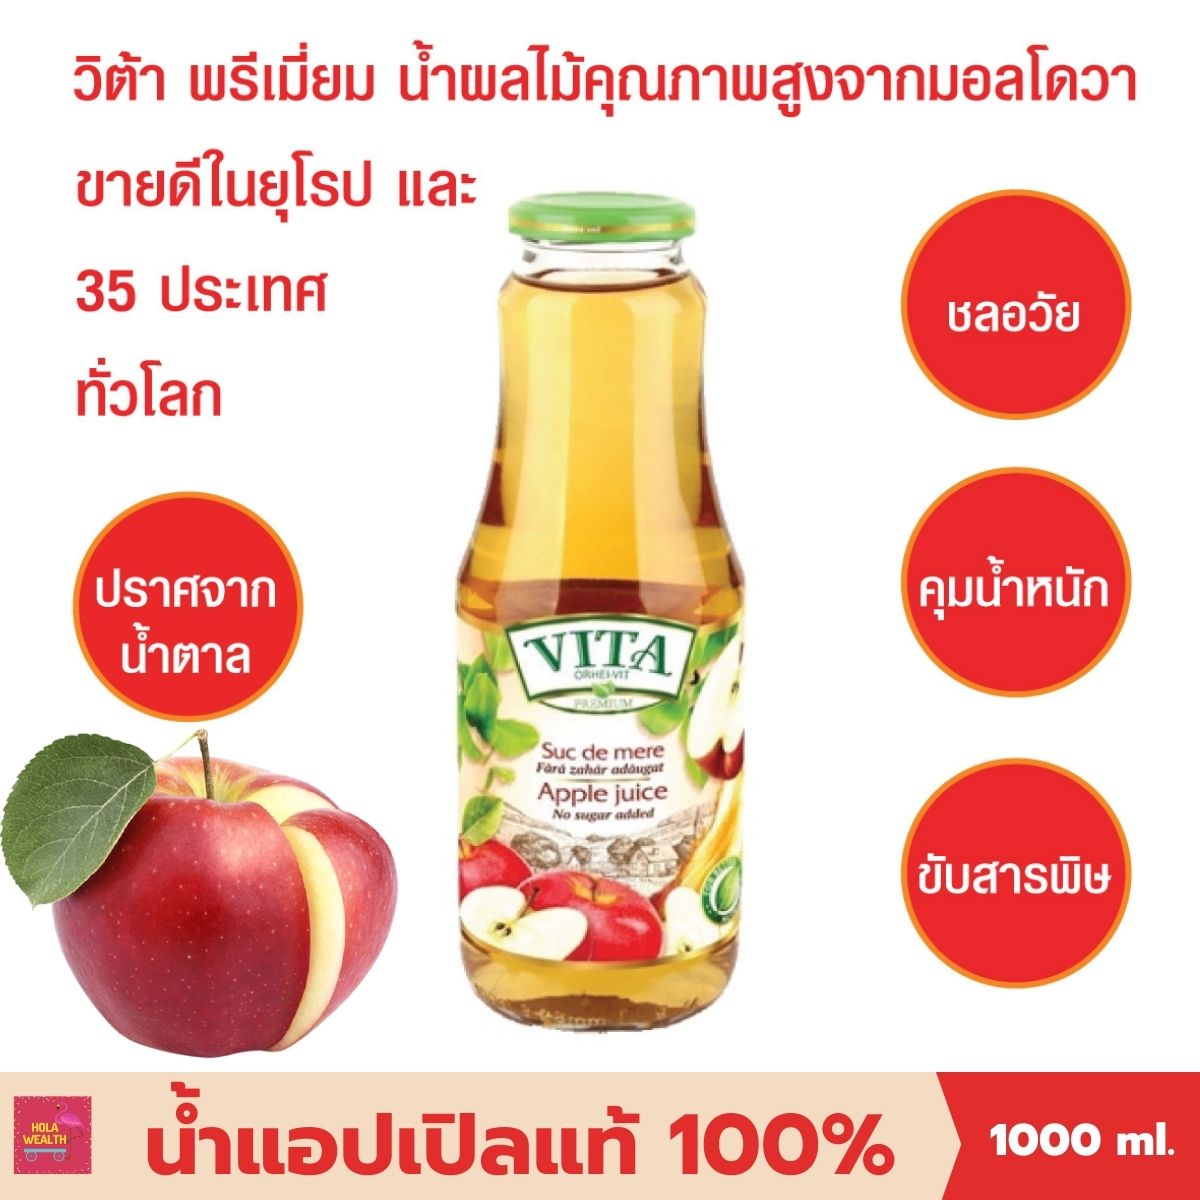 น้ำผลไม้แท้100 น้ำแอปเปิ้ลแท้ 100% VITA ORHEI-VIT Apple Juice No sugar added 1000 mL น้ำผลไม้ช่วยชลอวัย คุมน้ำหนัก ขับสารพิษ ไม่ผสมน้ำตาล ขายดีในยุโรป + ทั่วโลก